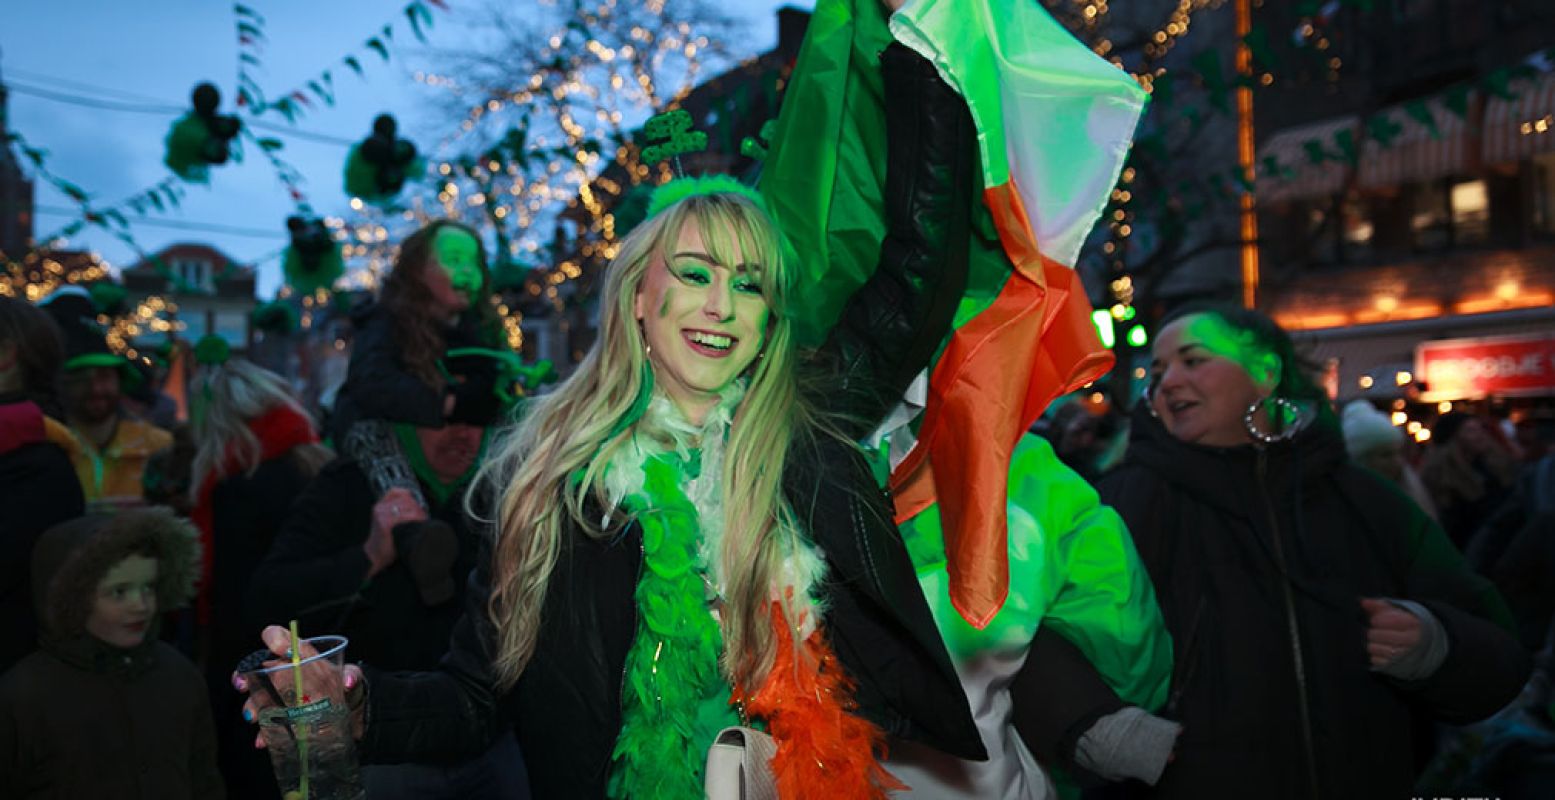 Vier dit jaar ook Saint Patrick's Day, de nationale feestdag van Ierland. Dat kan gewoon in Nederland. Zeker in Den Haag, waar de Grote Markt groen kleurt op 17 maart. Foto: Judith Zandwijk